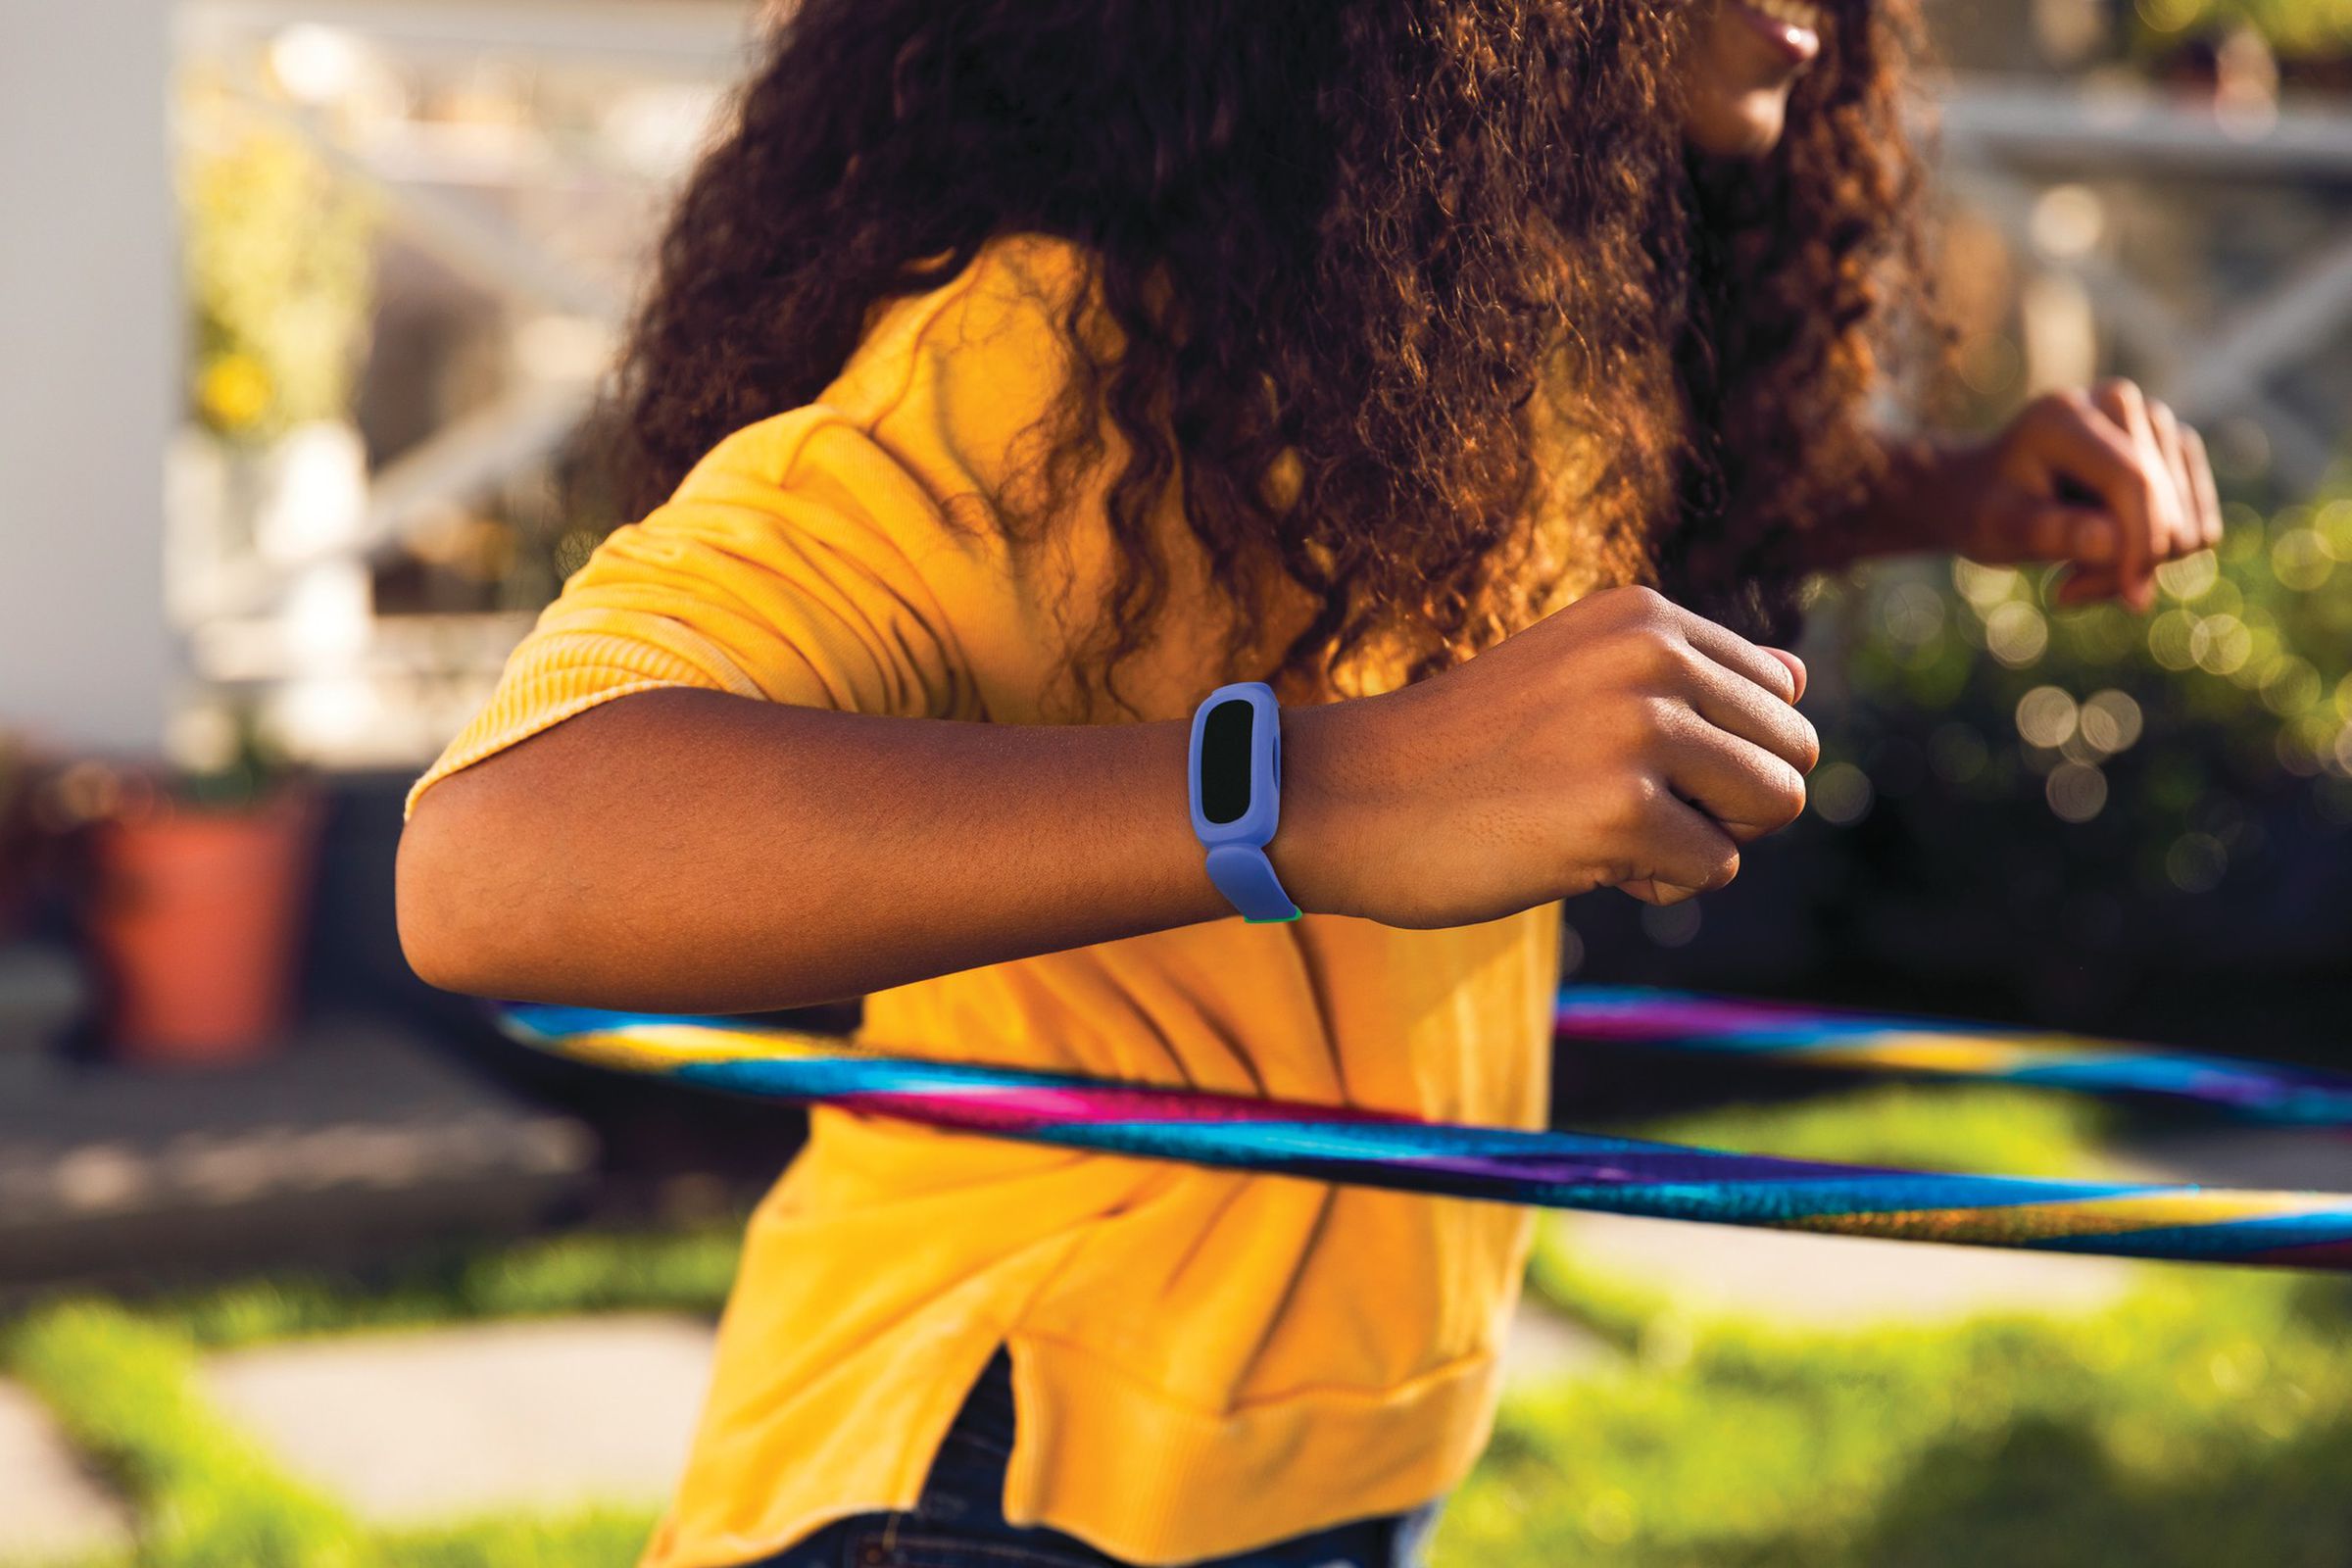 Sağ bileğinde mavi bir Fitbit Ace takarken hulahup atan bir çocuğun fotoğrafı.